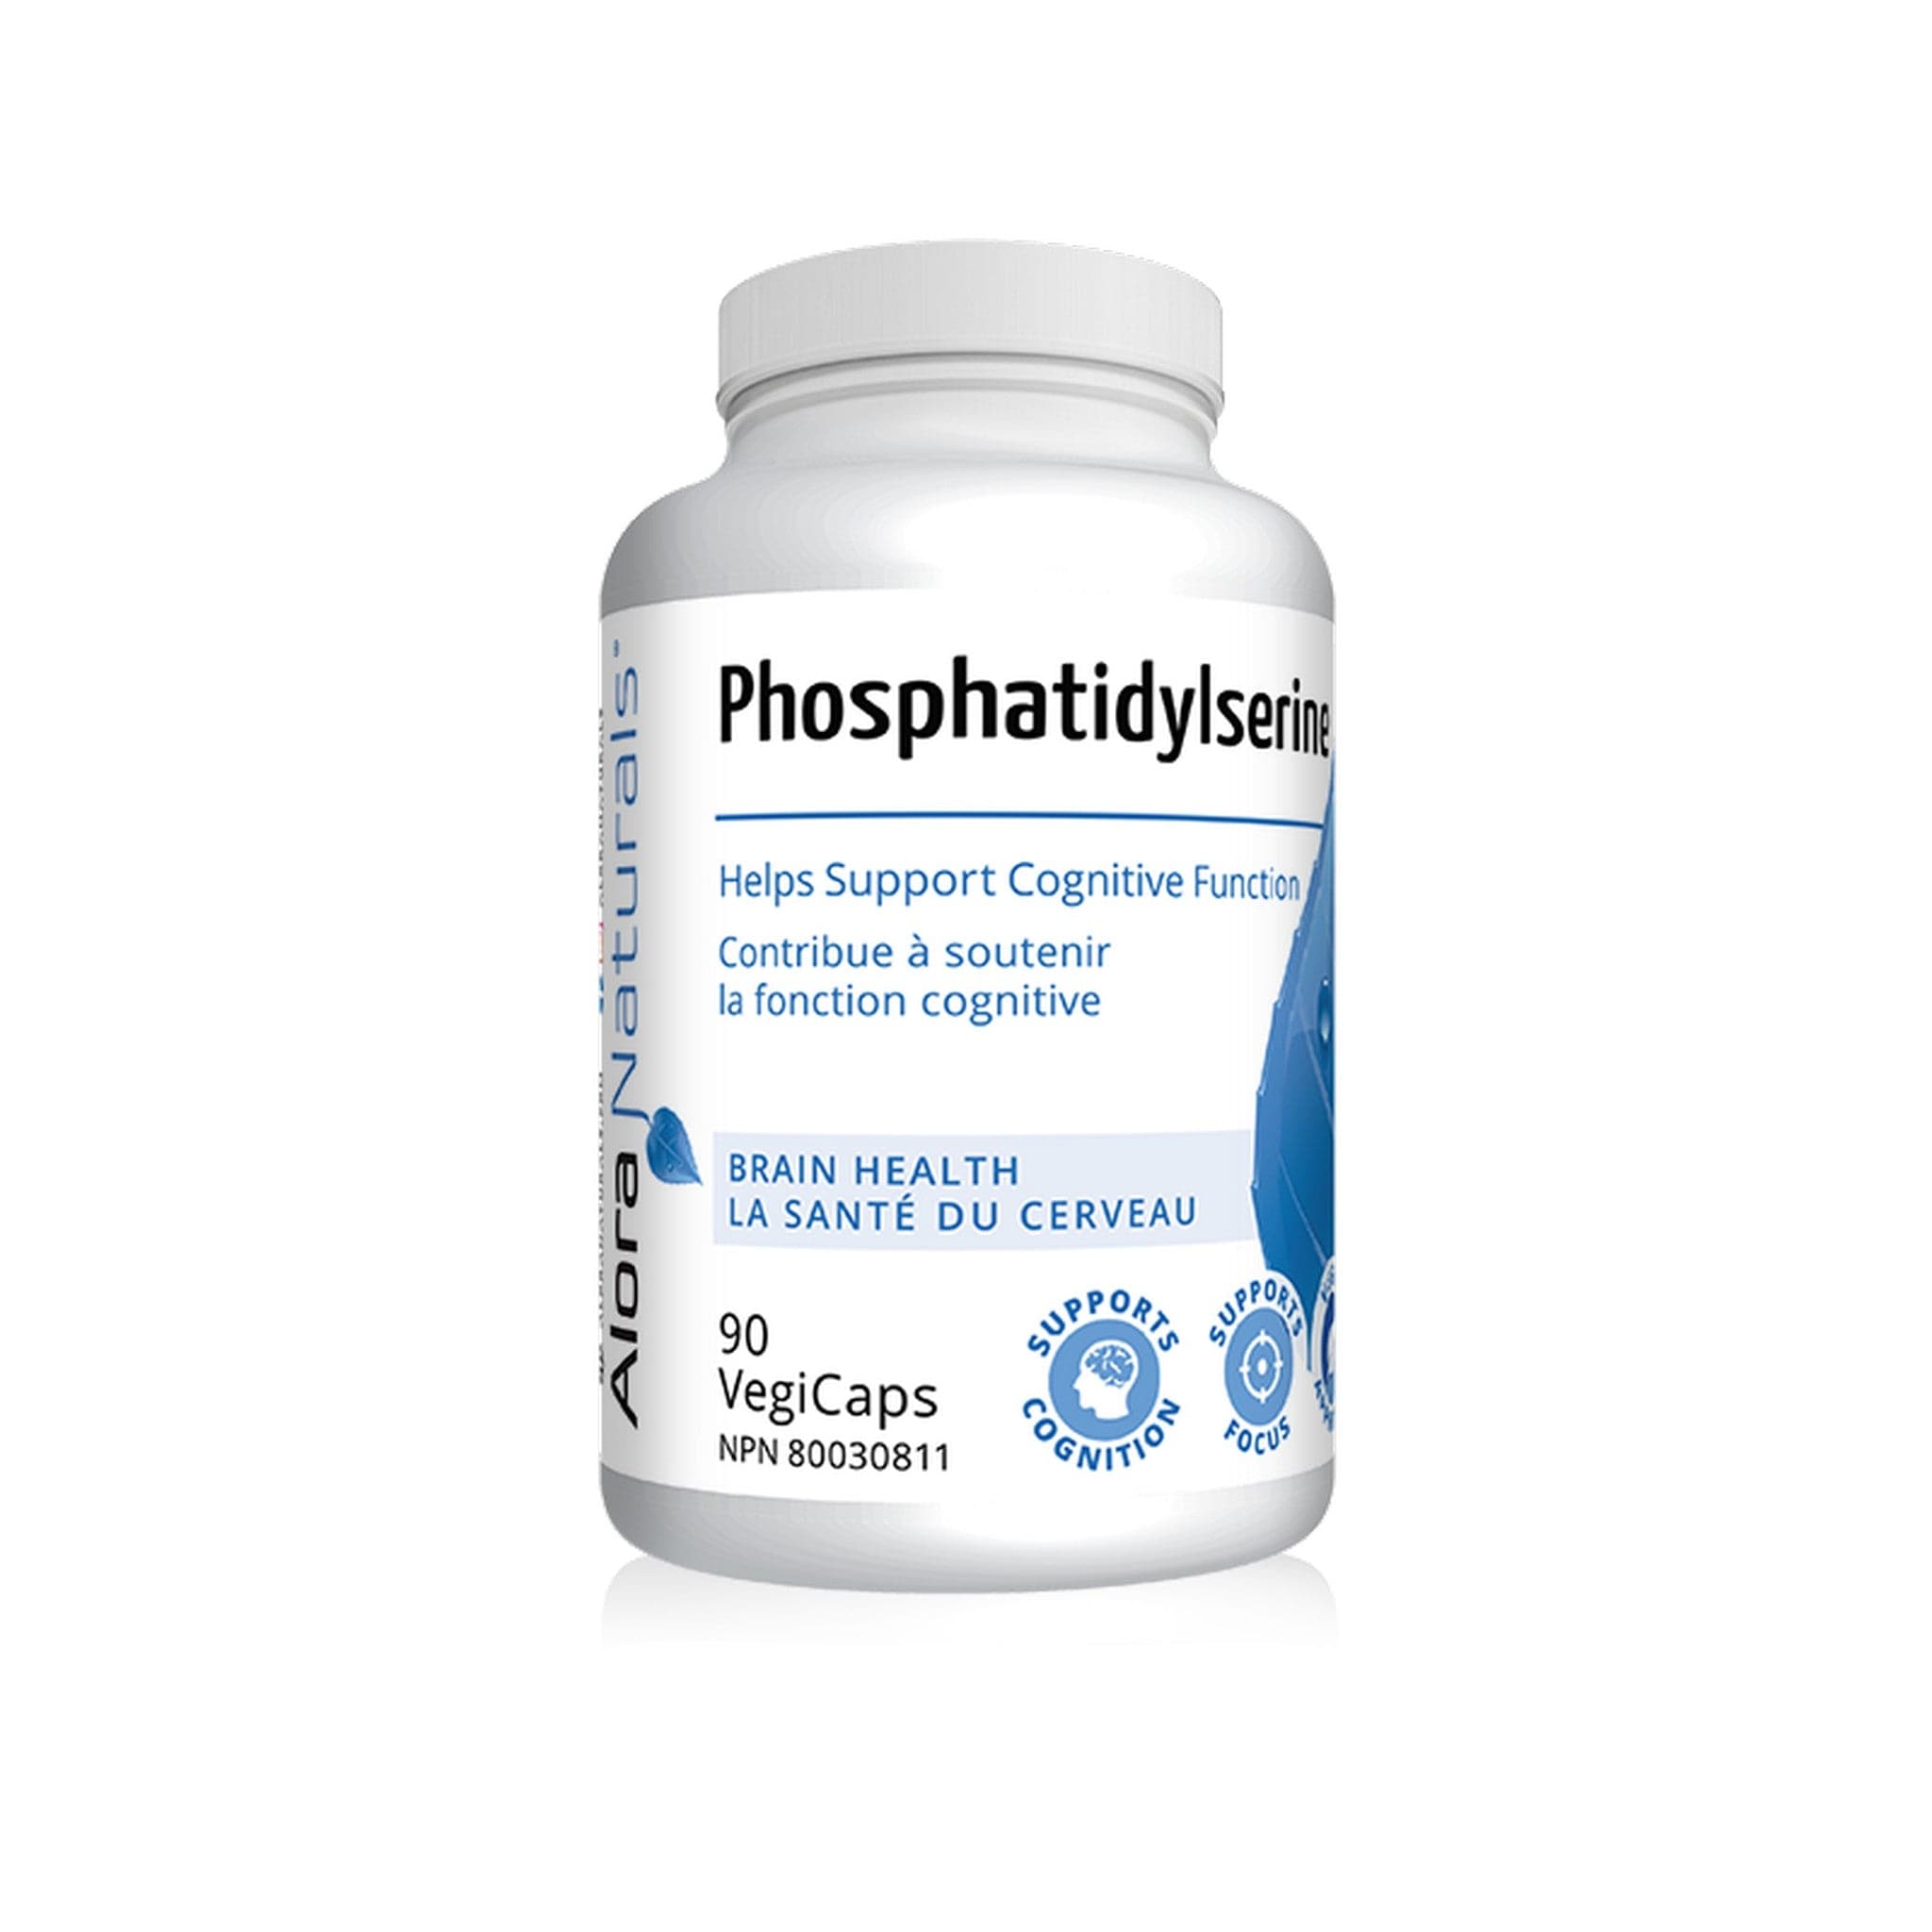 Alora Naturals Phosphatidylserine 90 capsules